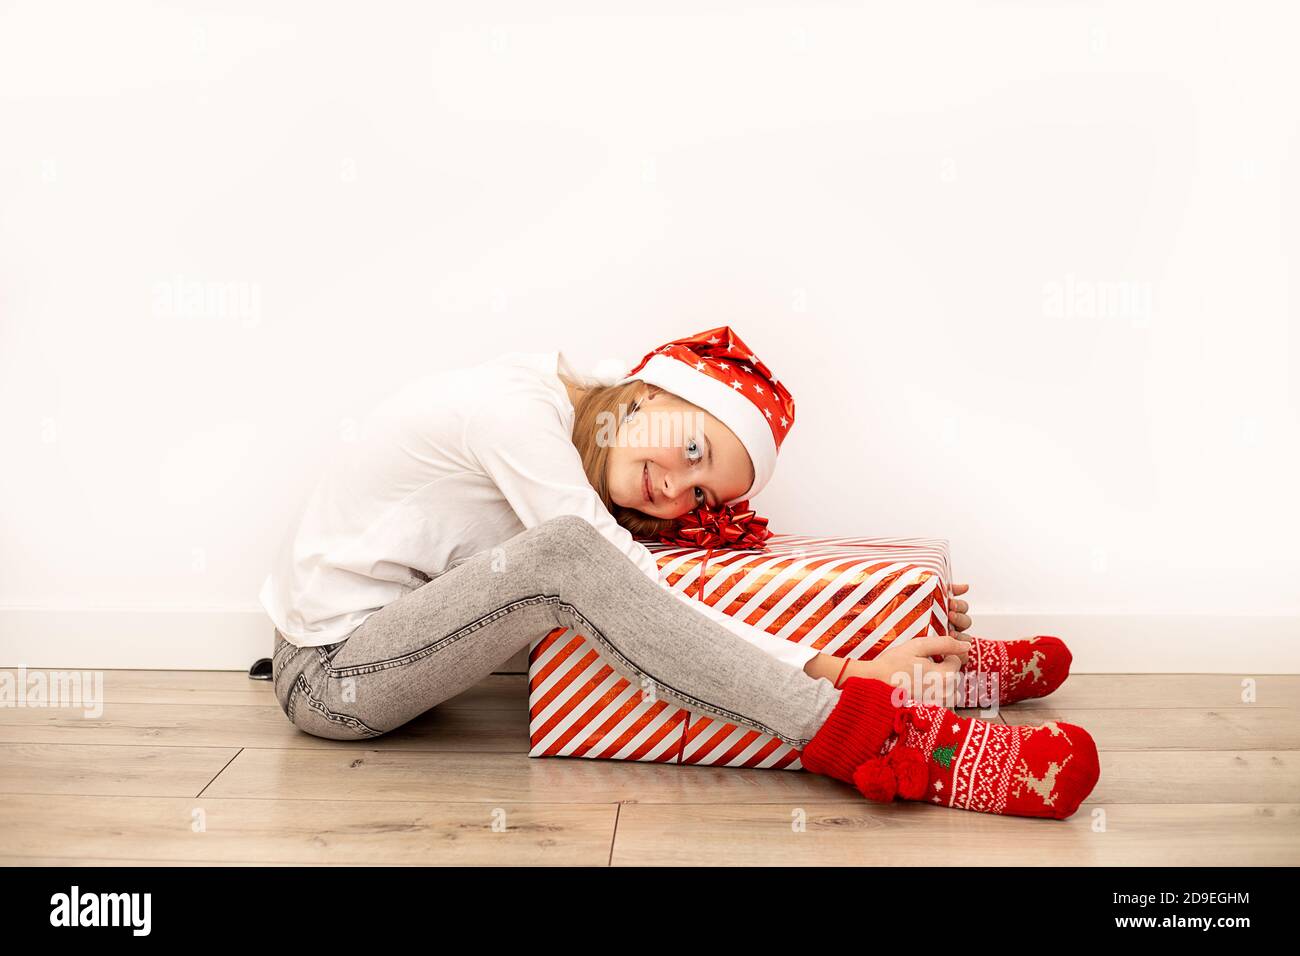 Ein schönes Mädchen in legerer Kleidung mit Weihnachtszubehör sitzt auf dem Boden und umarmt eine große Geschenkbox mit einem roten Band und einer Schleife. In voller Länge Stockfoto